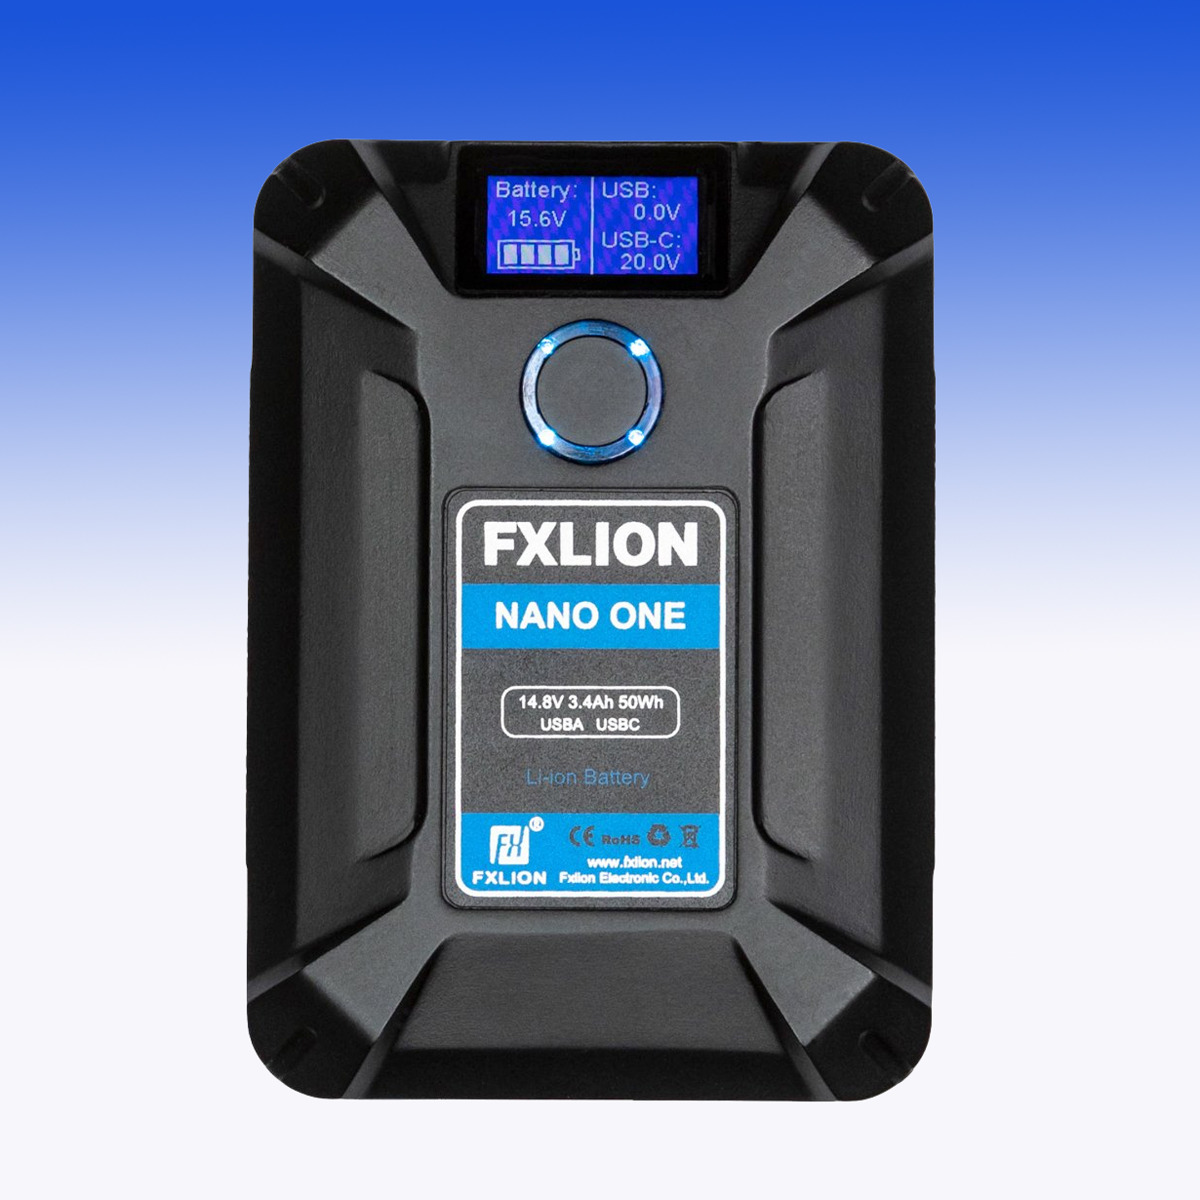 FXLION NANO ONE kompakte 14,8V 50WH V-Mount Batterie - SPARPREIS